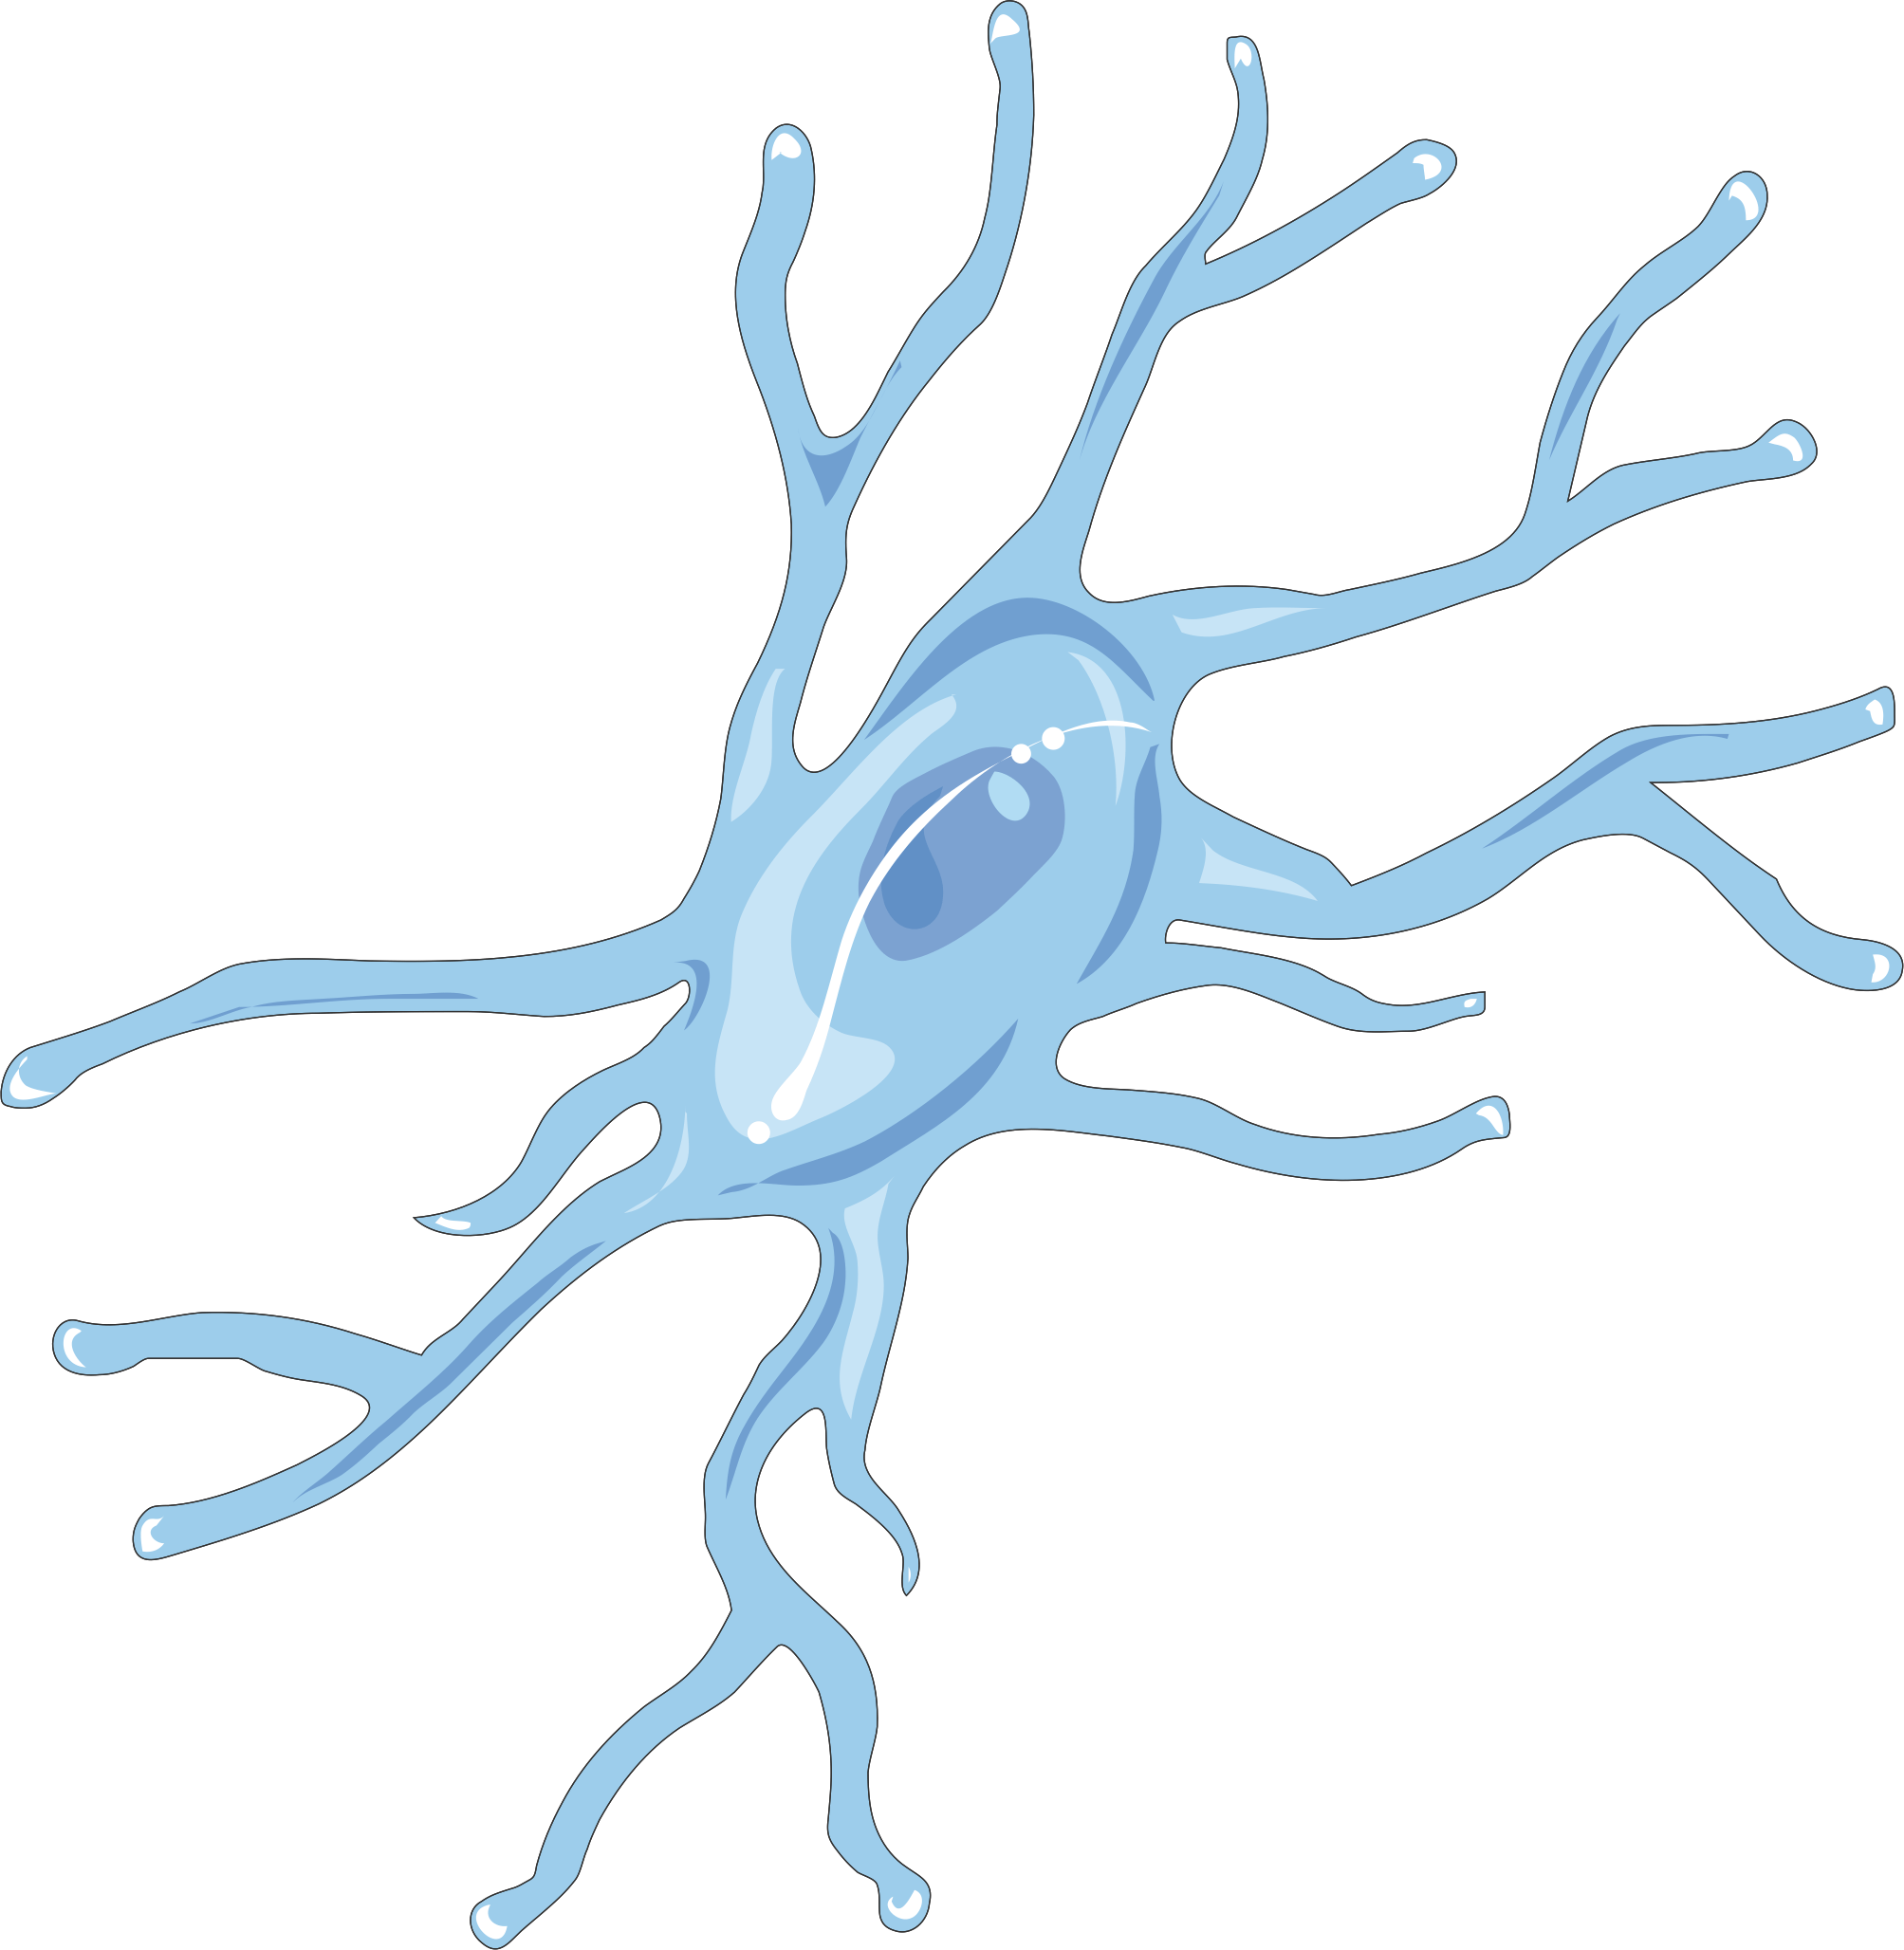 Microglia Reduce the Effect of Cocaine in the Brain